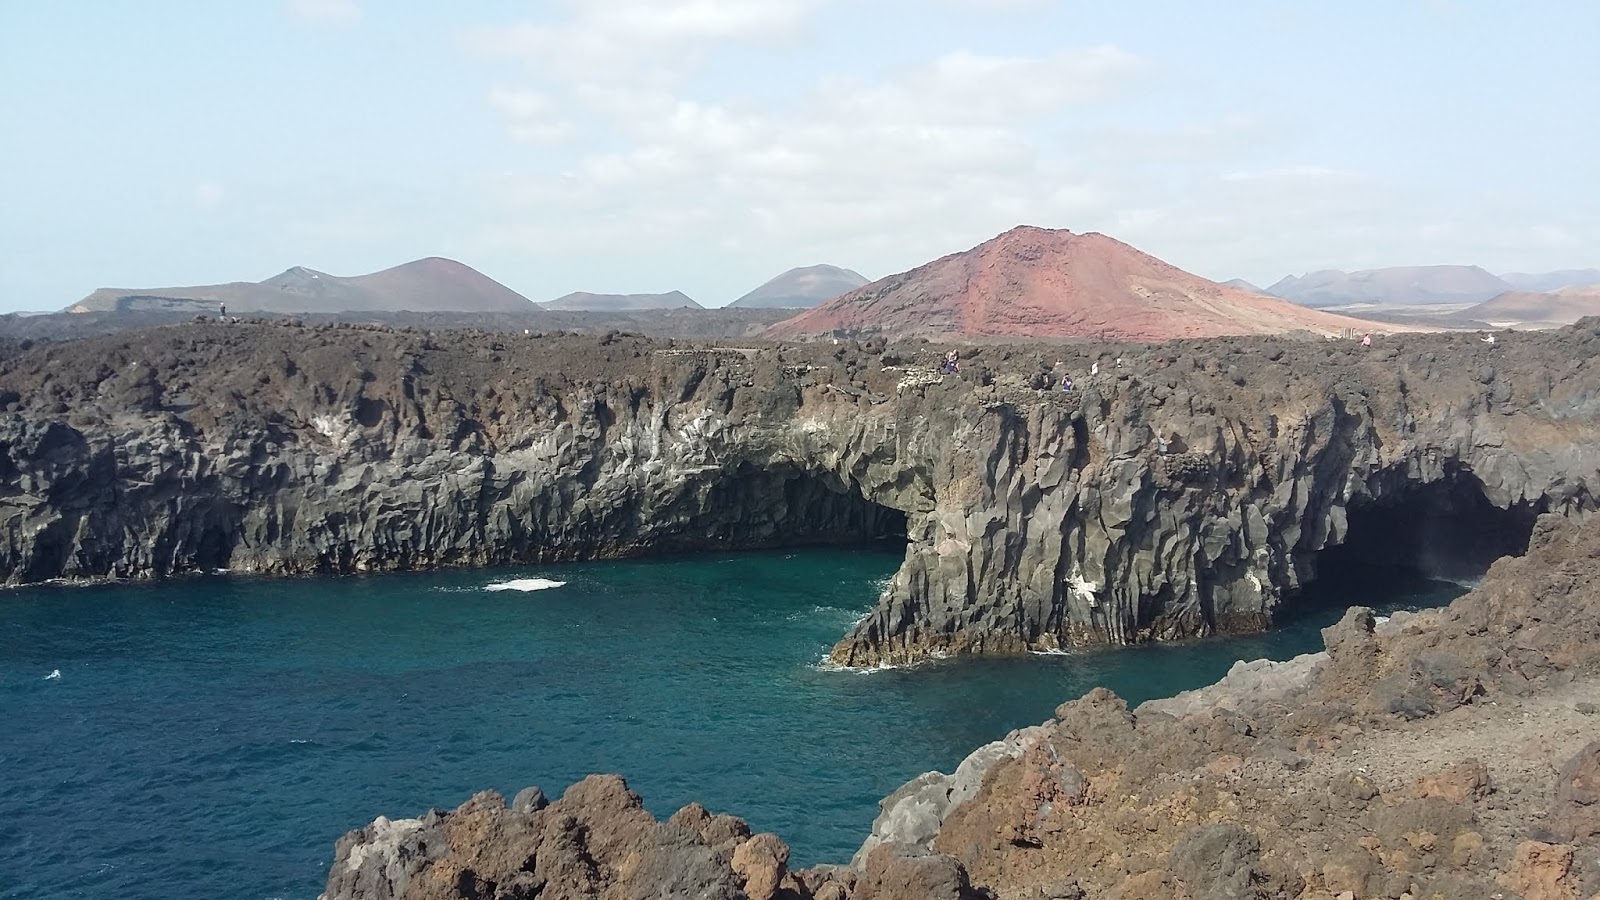 Explorando El Golfo - Lanzarote, playas y pateos (2)